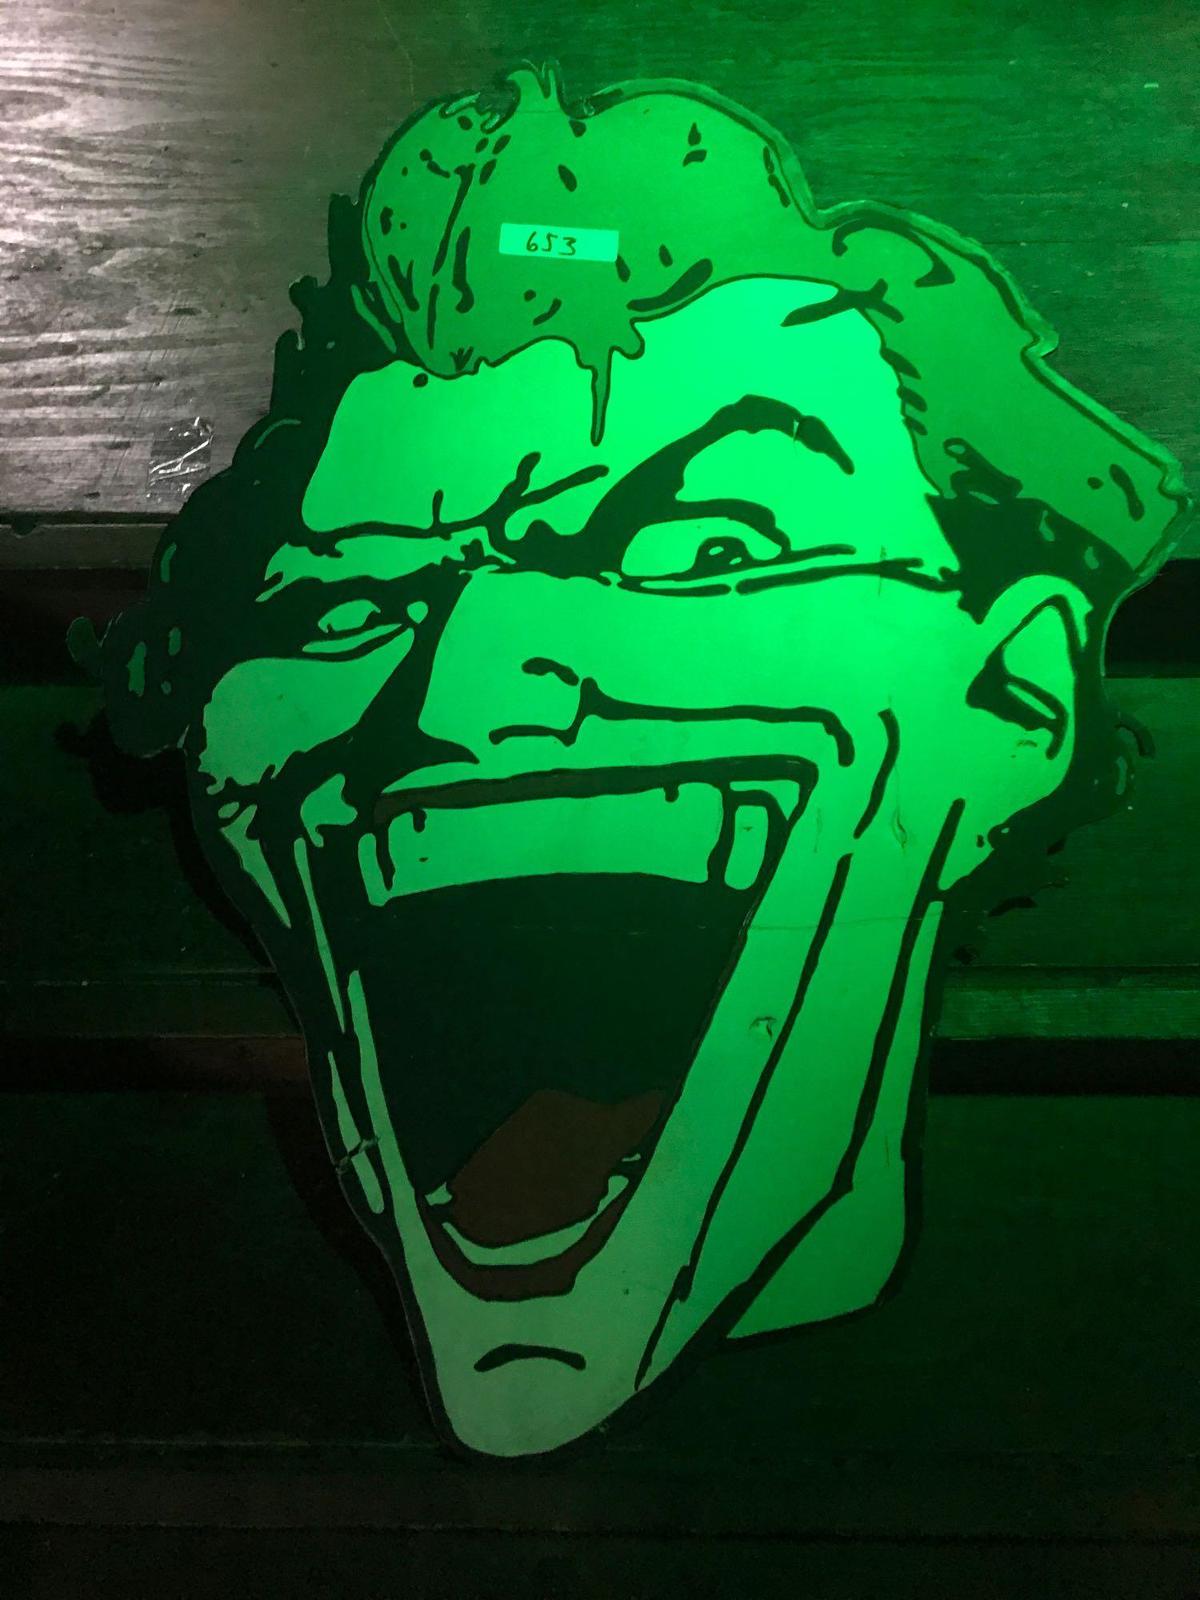 Joker head cardboard 3ft 5in x 2ft 7in